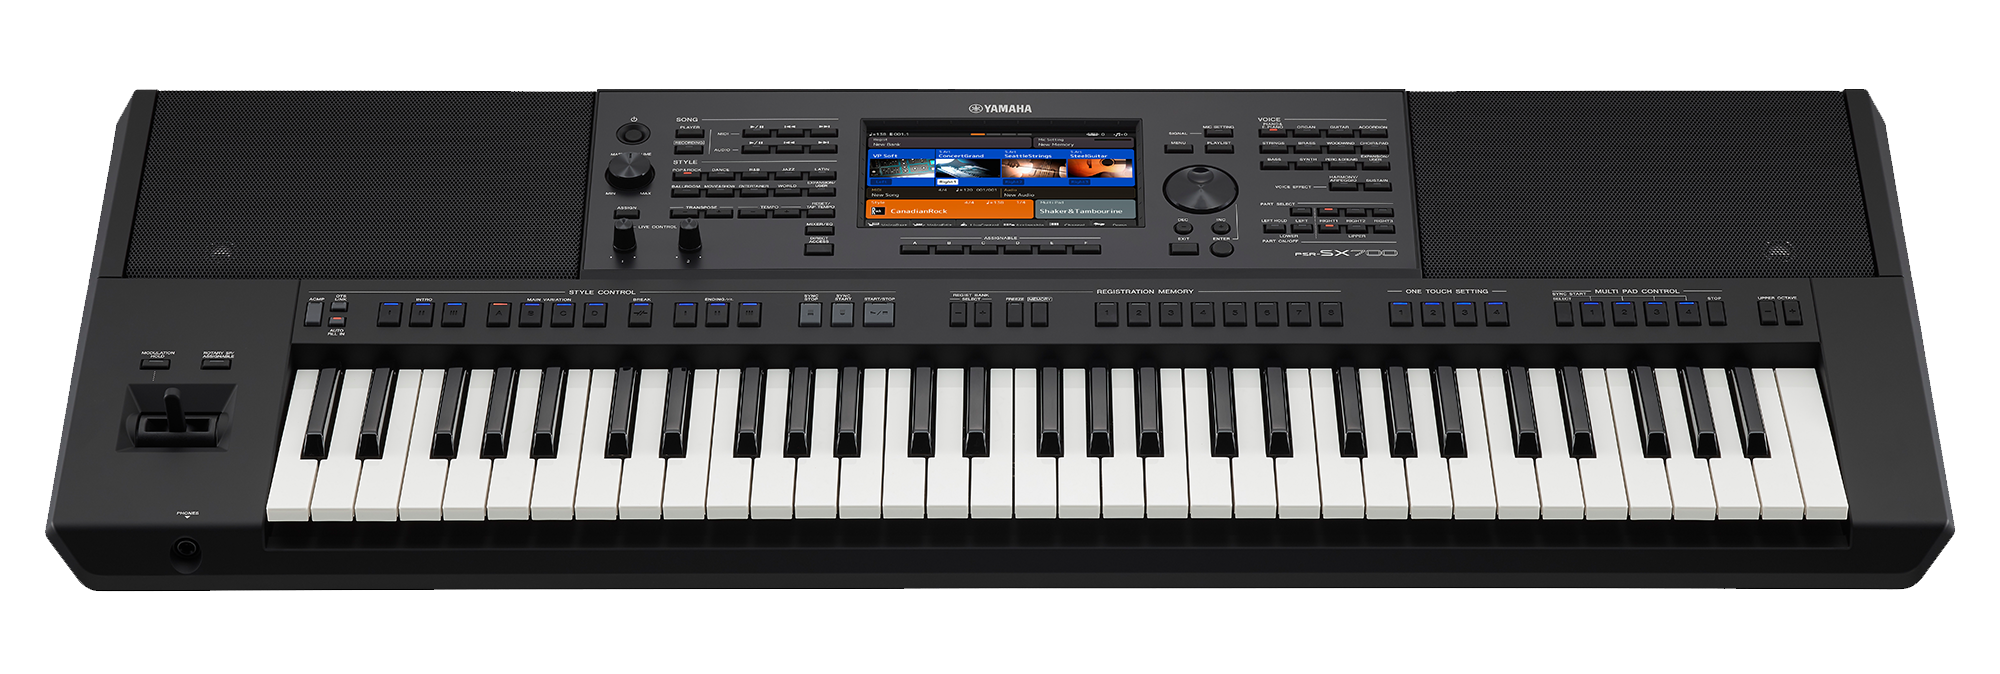 yamaha psr-sx700 electronic keyboard piano singapore